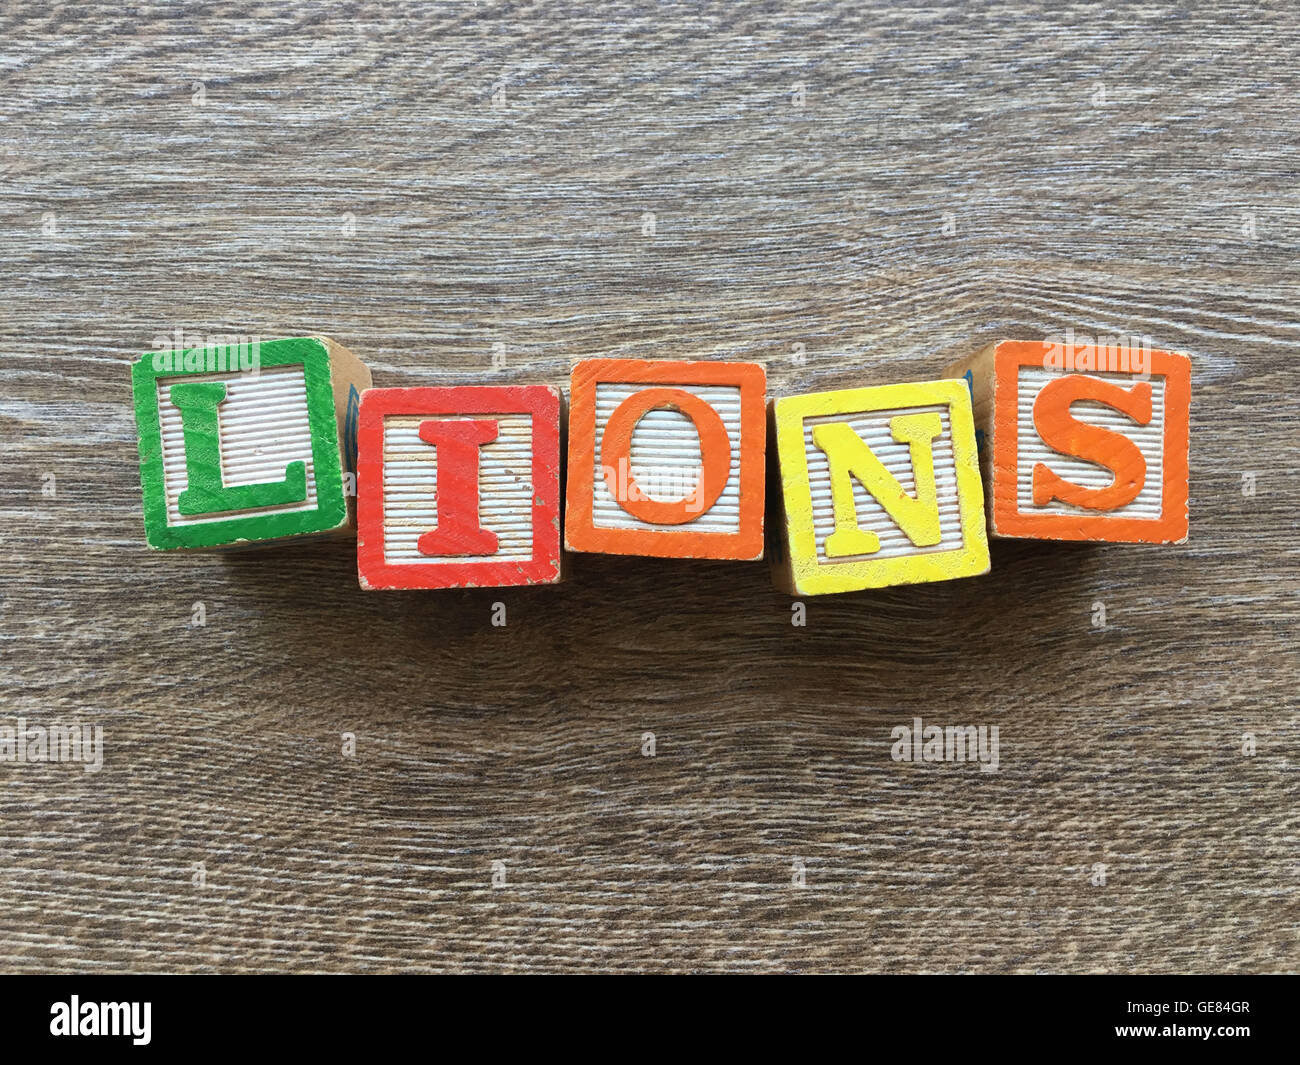 Holzblöcke oder hölzerne Würfel Spielzeug mit Alphabet Buchstaben darauf kombiniert zusammen, um das Wort Löwen Stockfoto